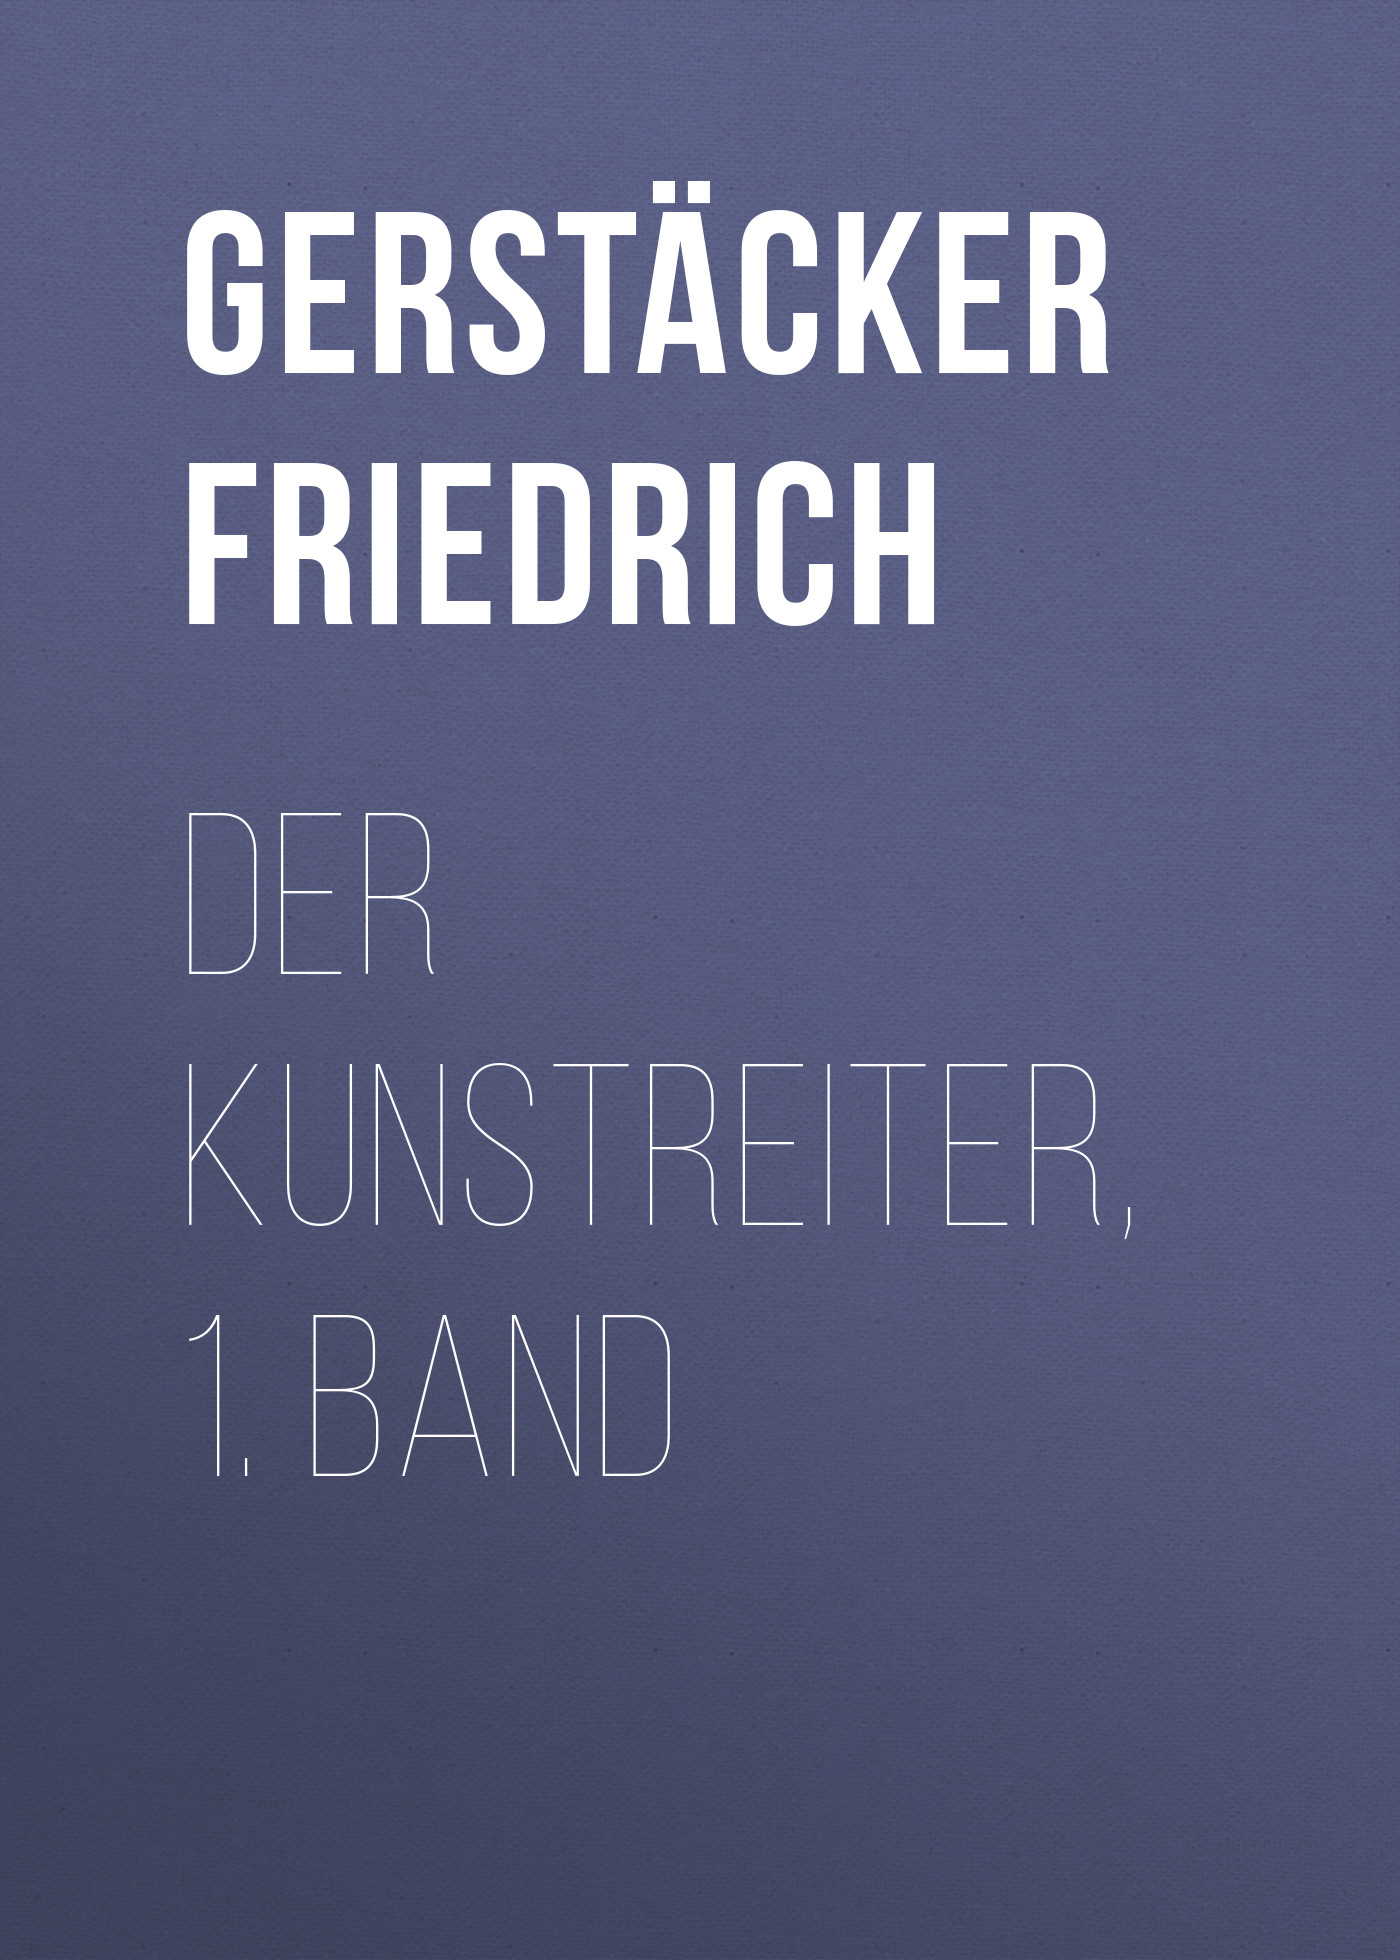 Книга Der Kunstreiter, 1. Band из серии , созданная Friedrich Gerstäcker, может относится к жанру Зарубежная старинная литература, Зарубежная классика. Стоимость электронной книги Der Kunstreiter, 1. Band с идентификатором 24937789 составляет 0 руб.